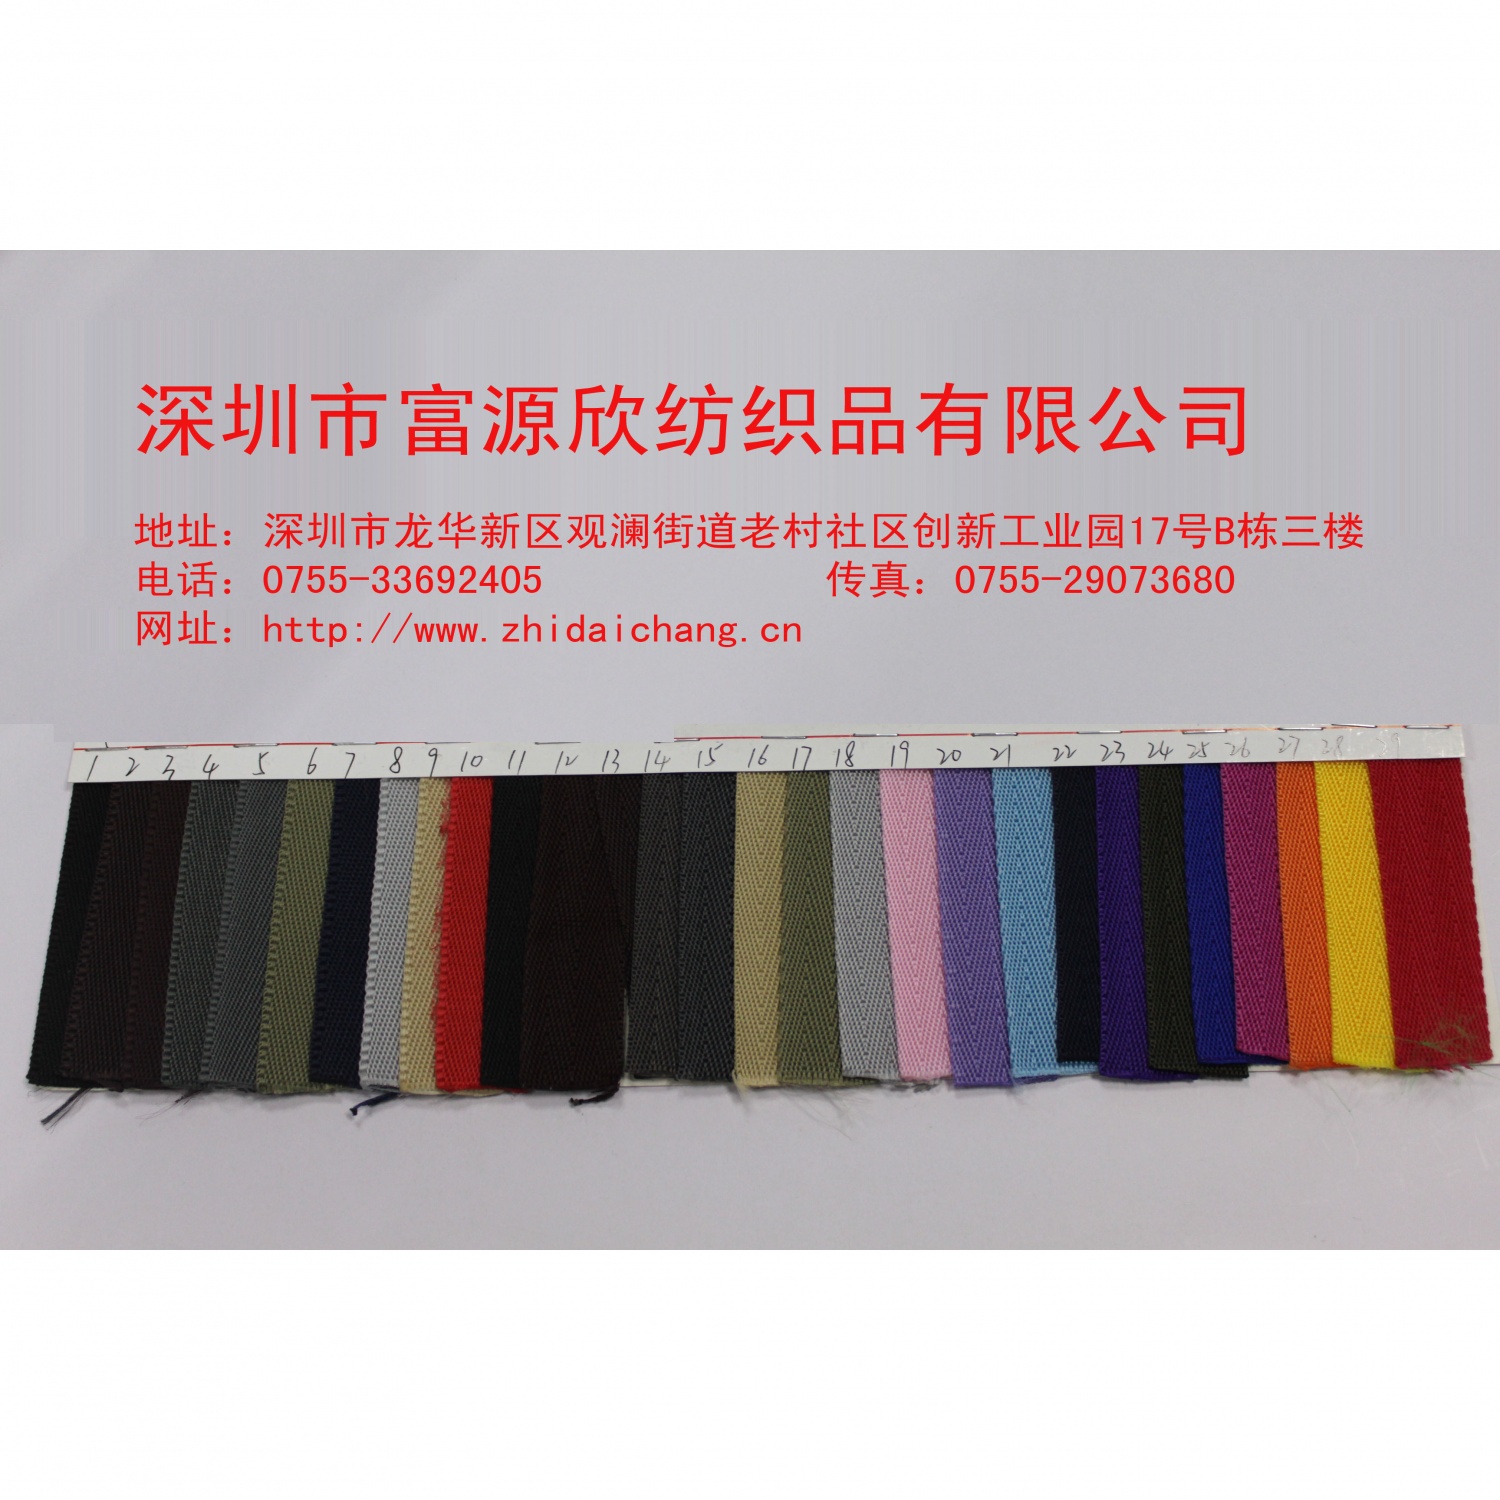 广东深圳富源欣织带厂|现货供应尼龙织带|PP包边带|可定制各种规格织带